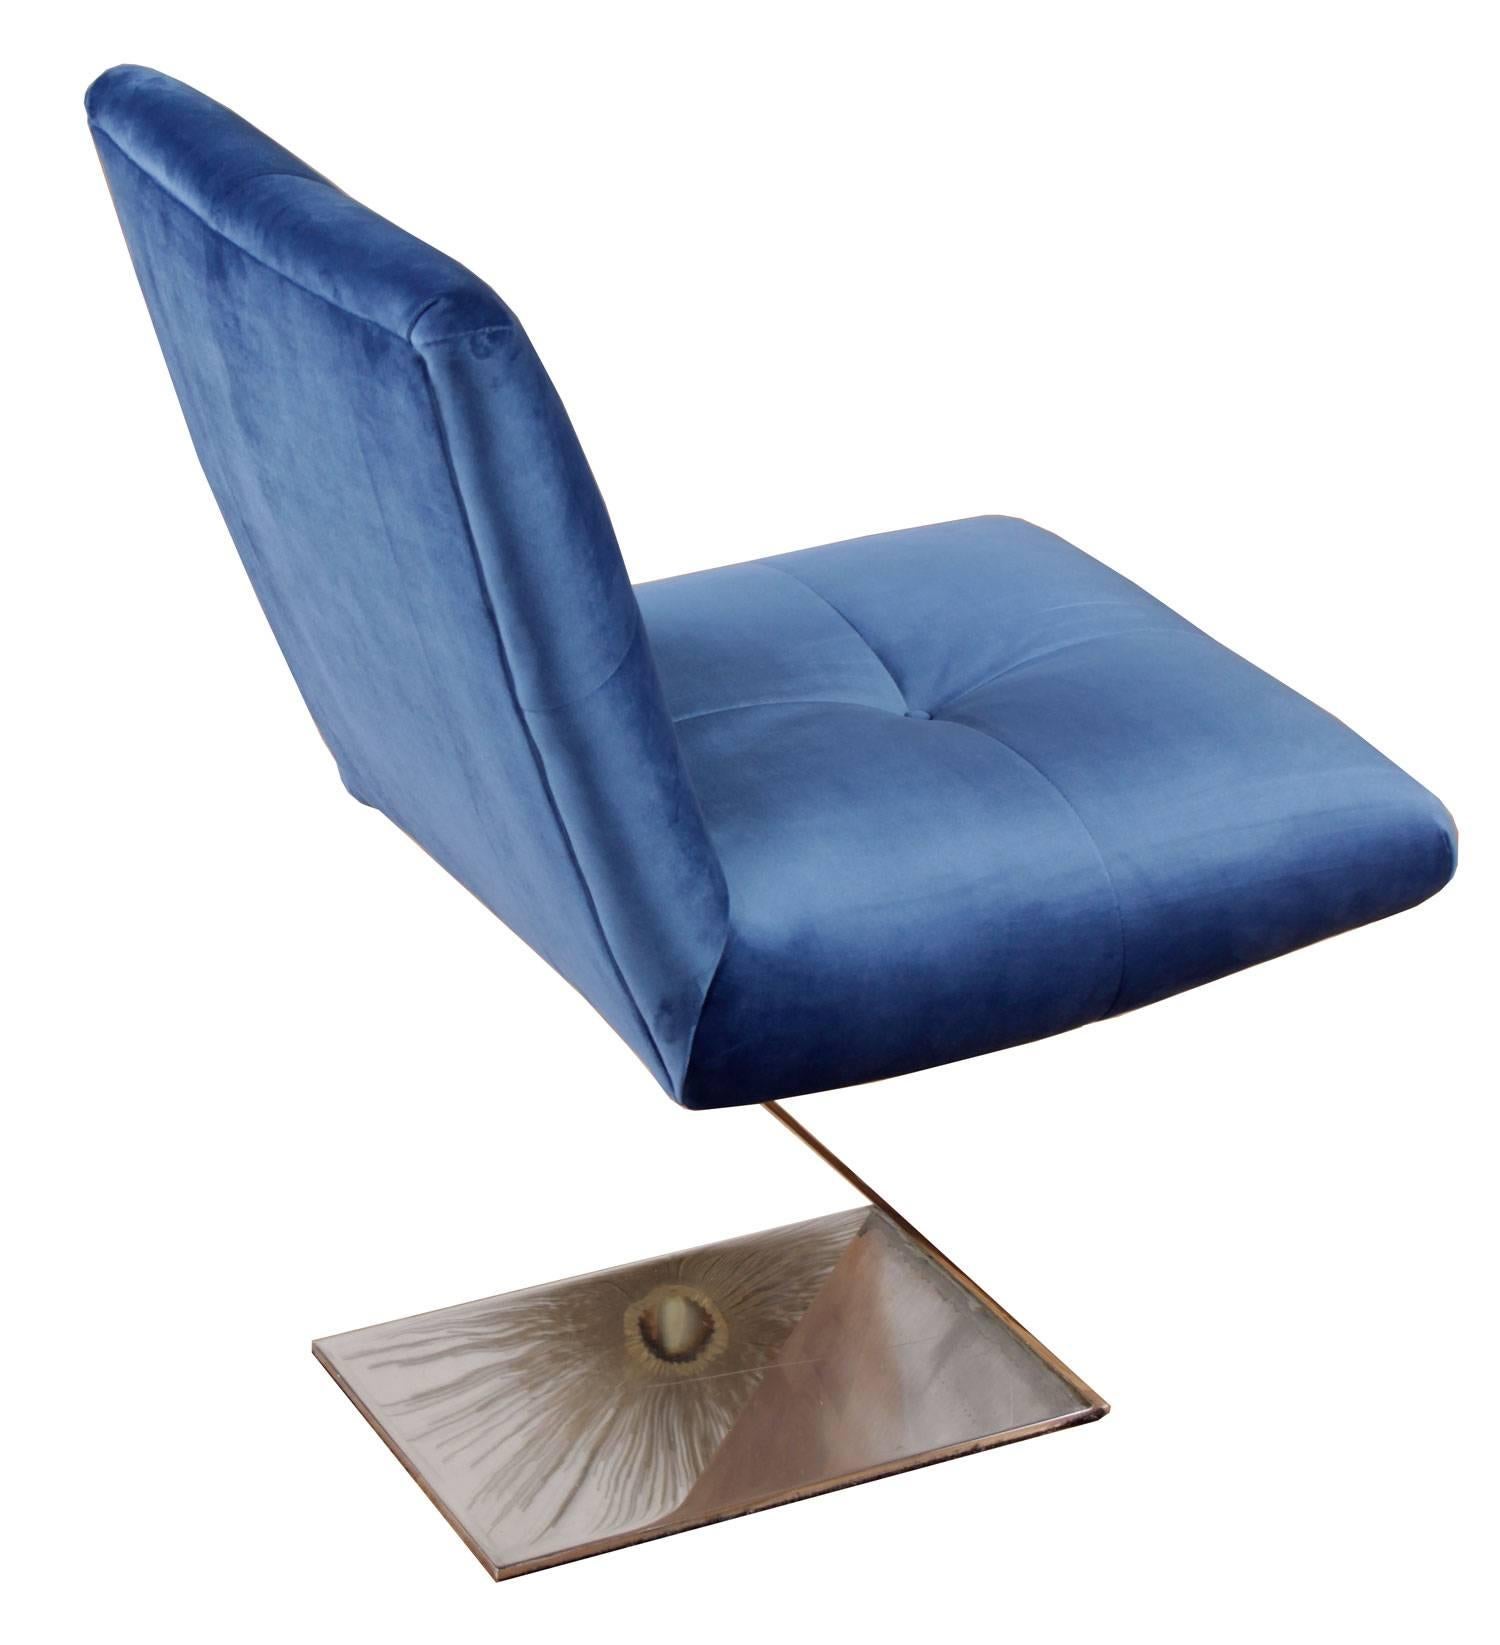 American Mid Century Modern Vladimir Kagan Style Chrome Z Chair in Blue Velvet